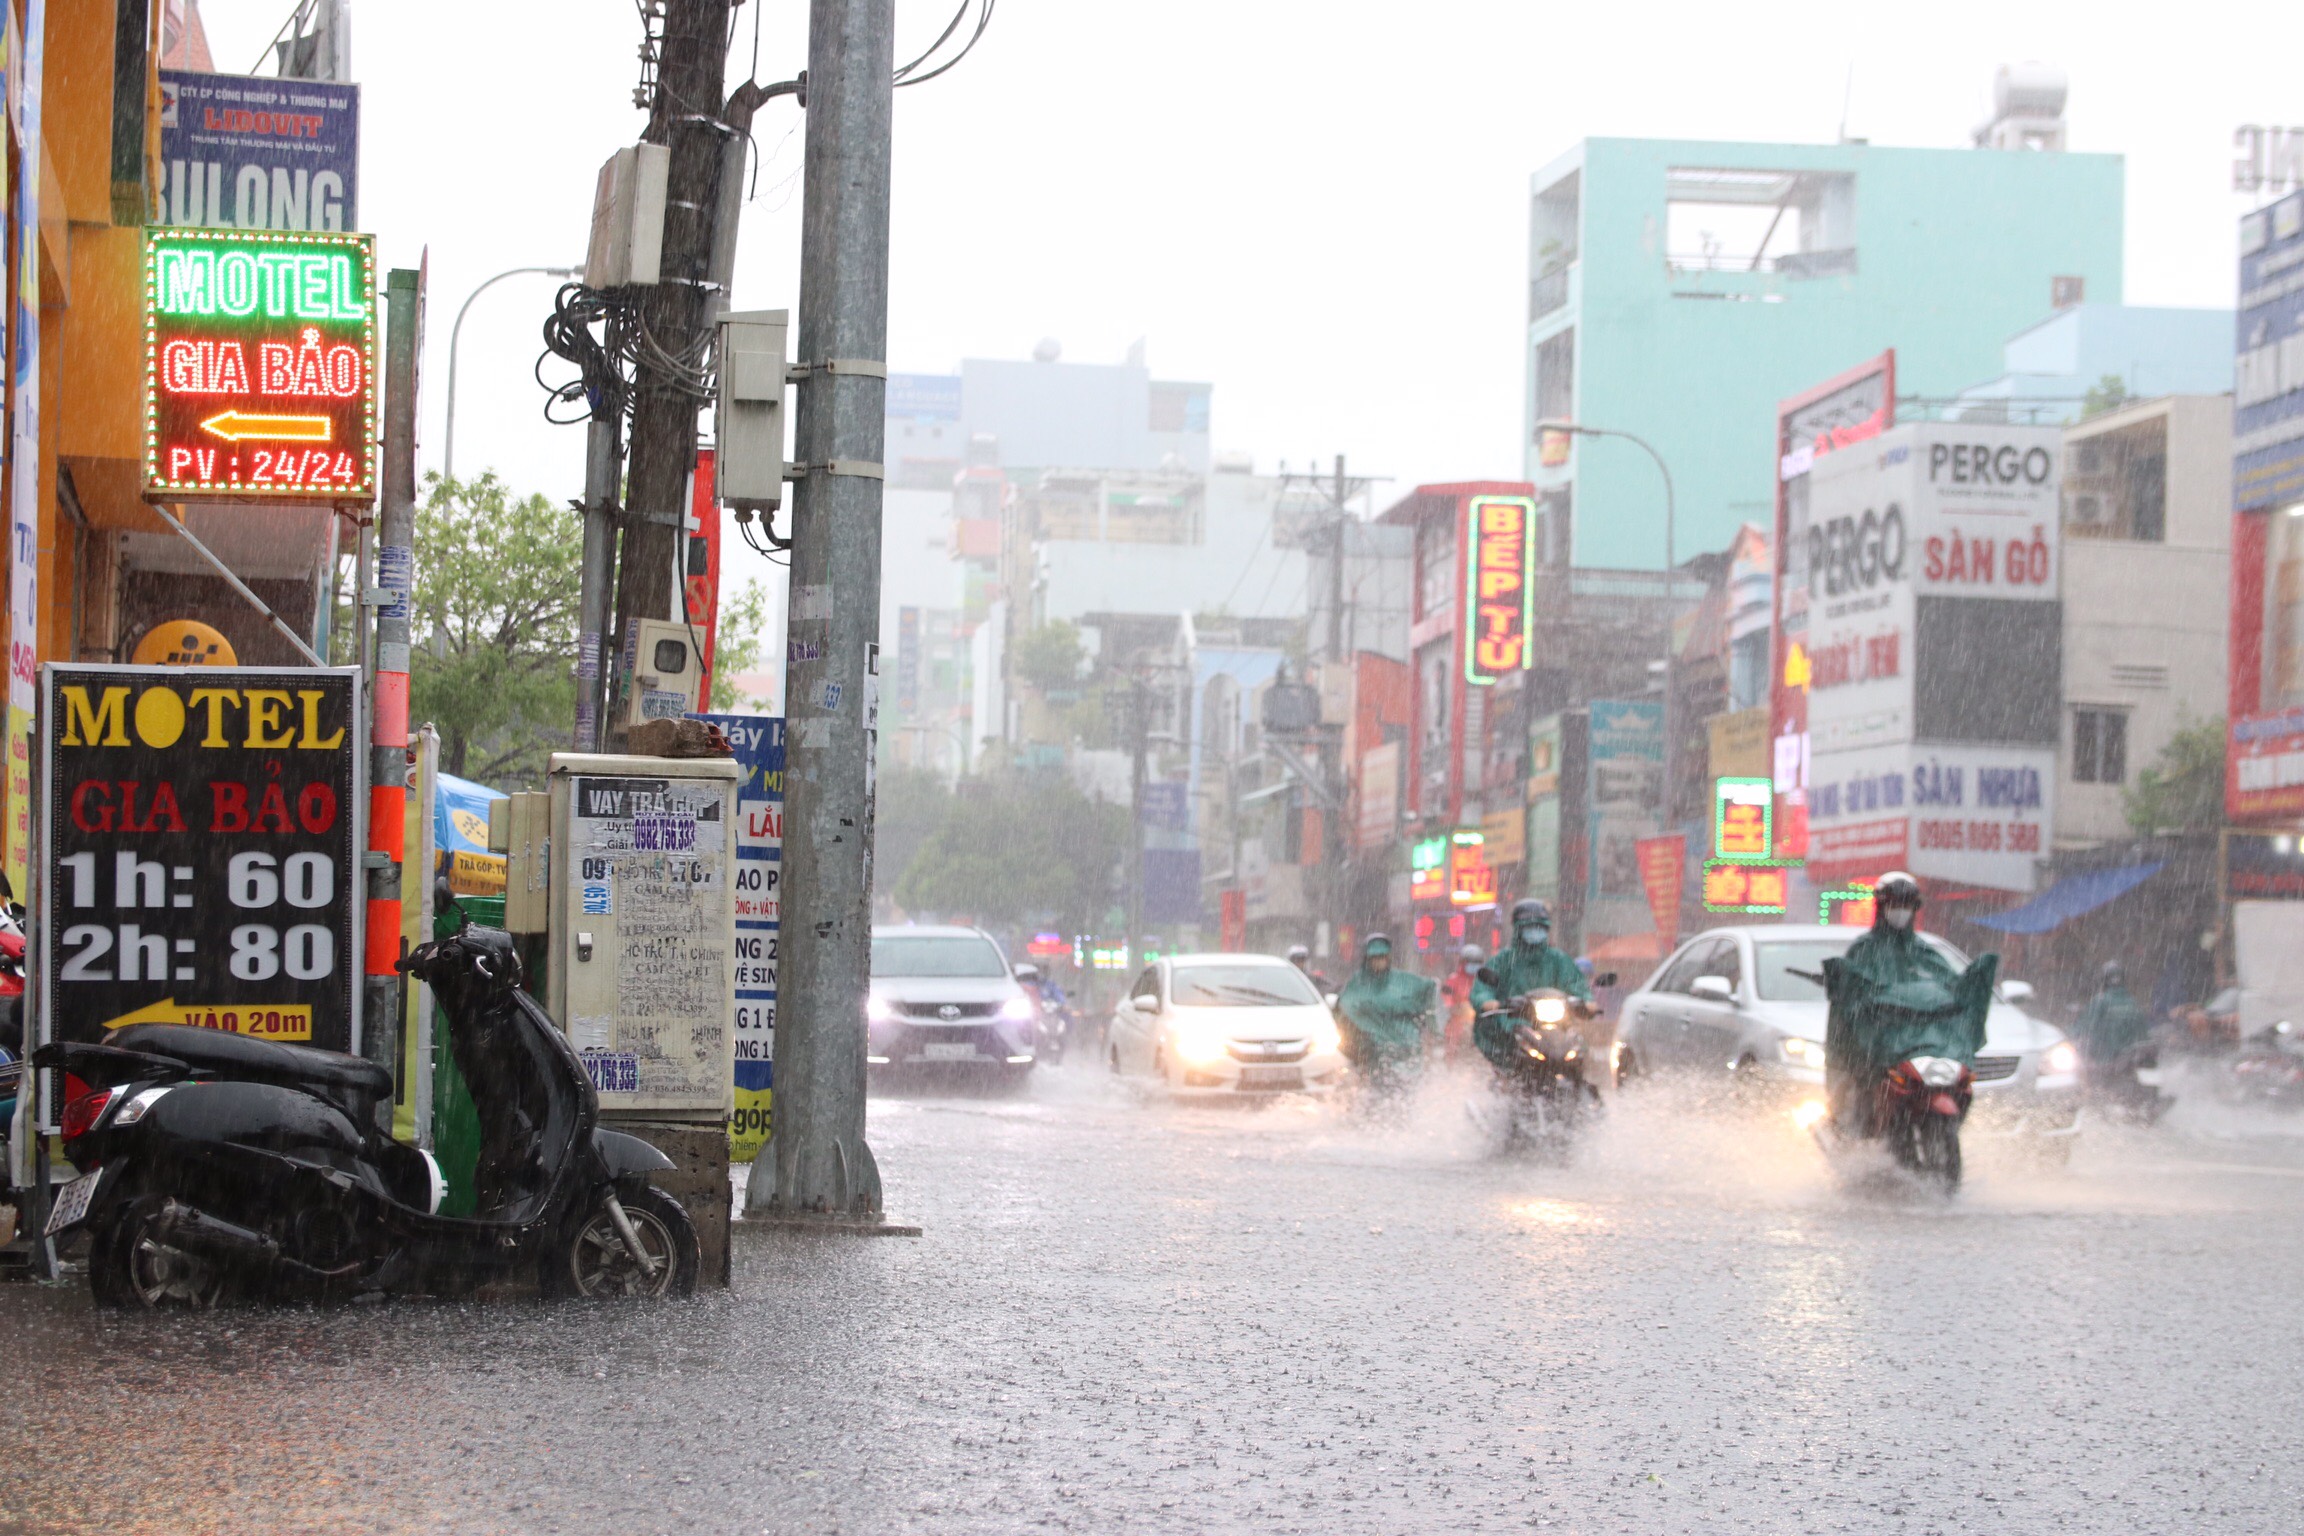 Mưa Sài Gòn là điều không thể thiếu trong hoạt động của thành phố này. Bạn đã từng trải nghiệm dưới cơn mưa cùng Sài Gòn chưa? Nếu chưa thì hãy cùng xem những bức ảnh đẹp và đầy cảm xúc về mưa Sài Gòn để cảm nhận sự thú vị này nha.